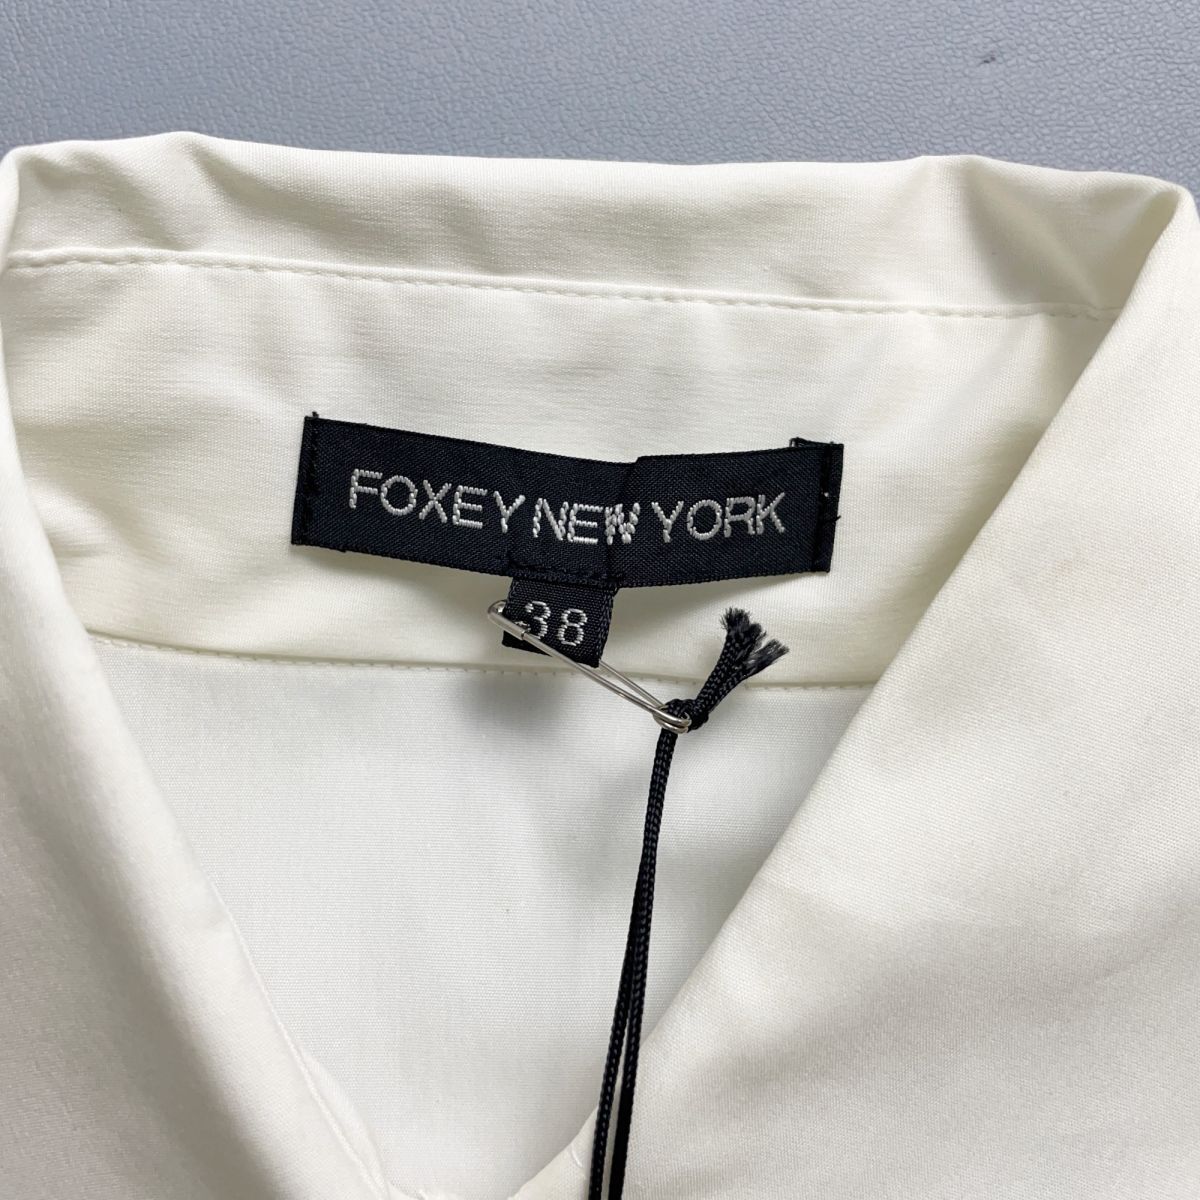  новый товар  неиспользуемый  FOXEY NEW YORK ... ... дизайн  рубашка  ...  вершина ...  женский   белый  размер  38*OC1632